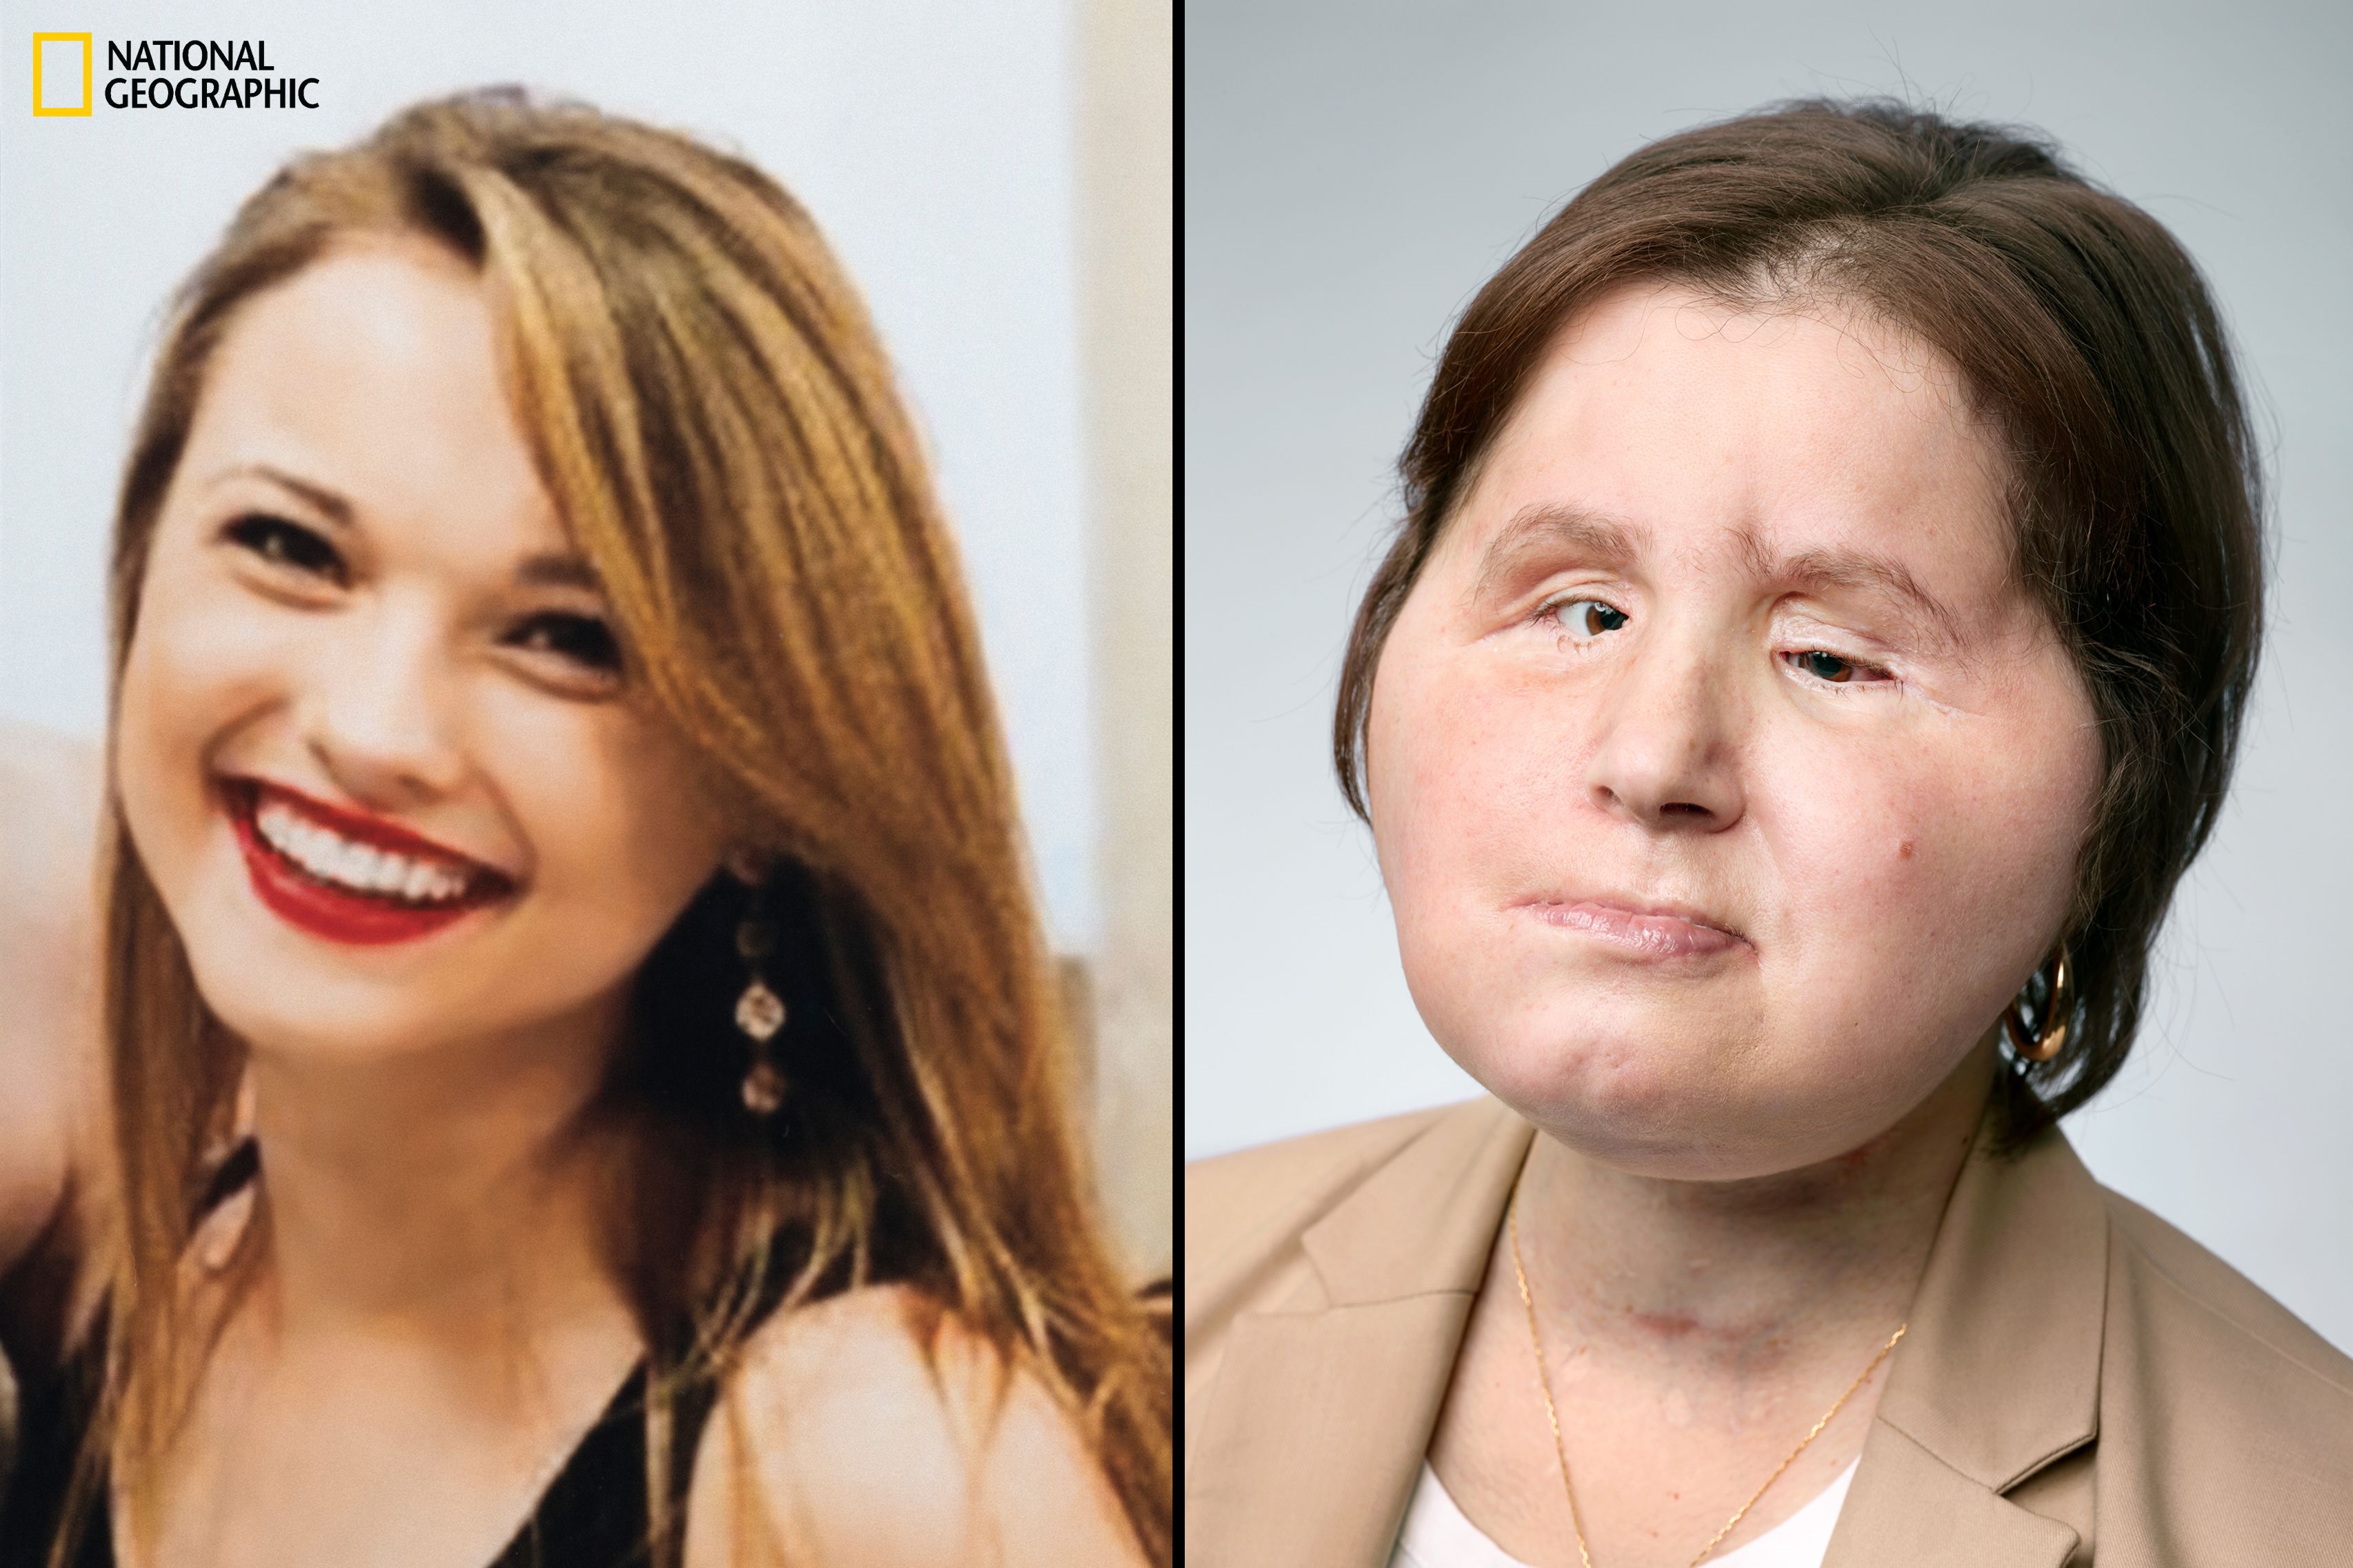 3412px x 2274px - Katie Stubblefield: Face transplant gives suicide survivor a 'second  chance' | CNN